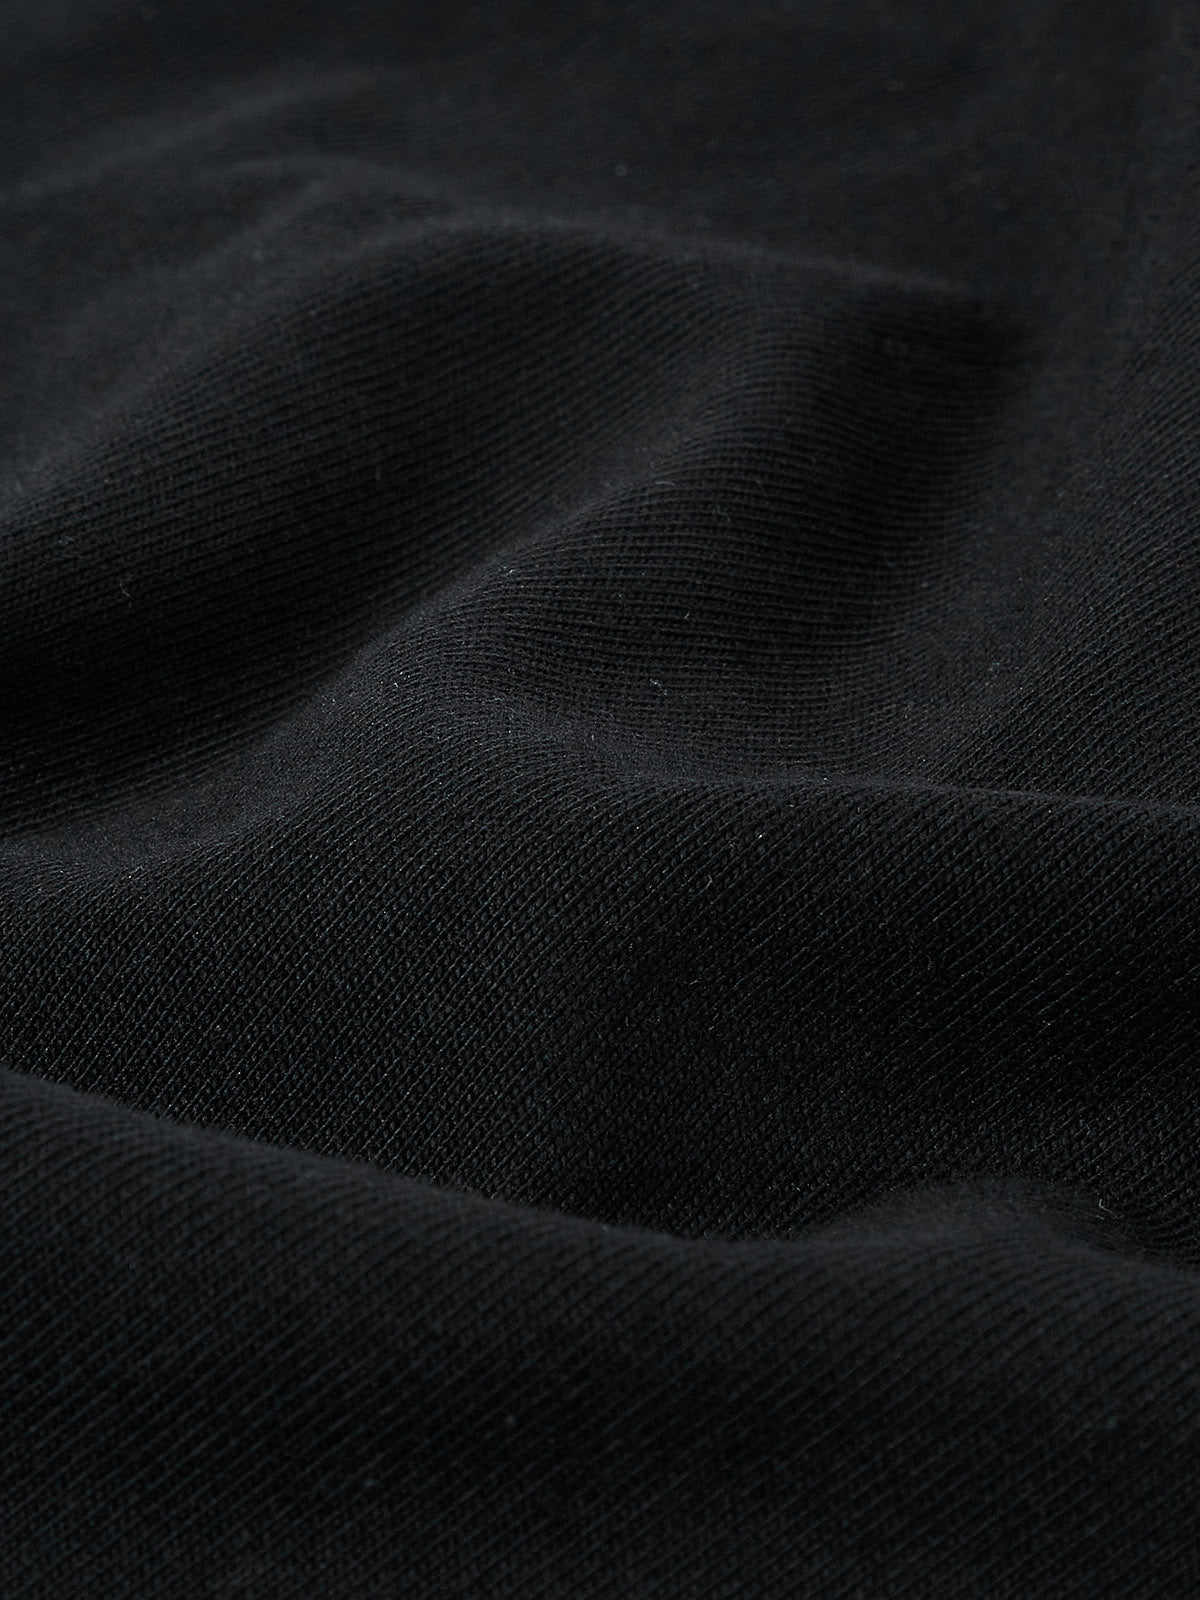 UNKNOWN ALLURE© ブラック マドンナ アンド チャイルド 壁画 400g ラウンド ネック スウェットシャツ